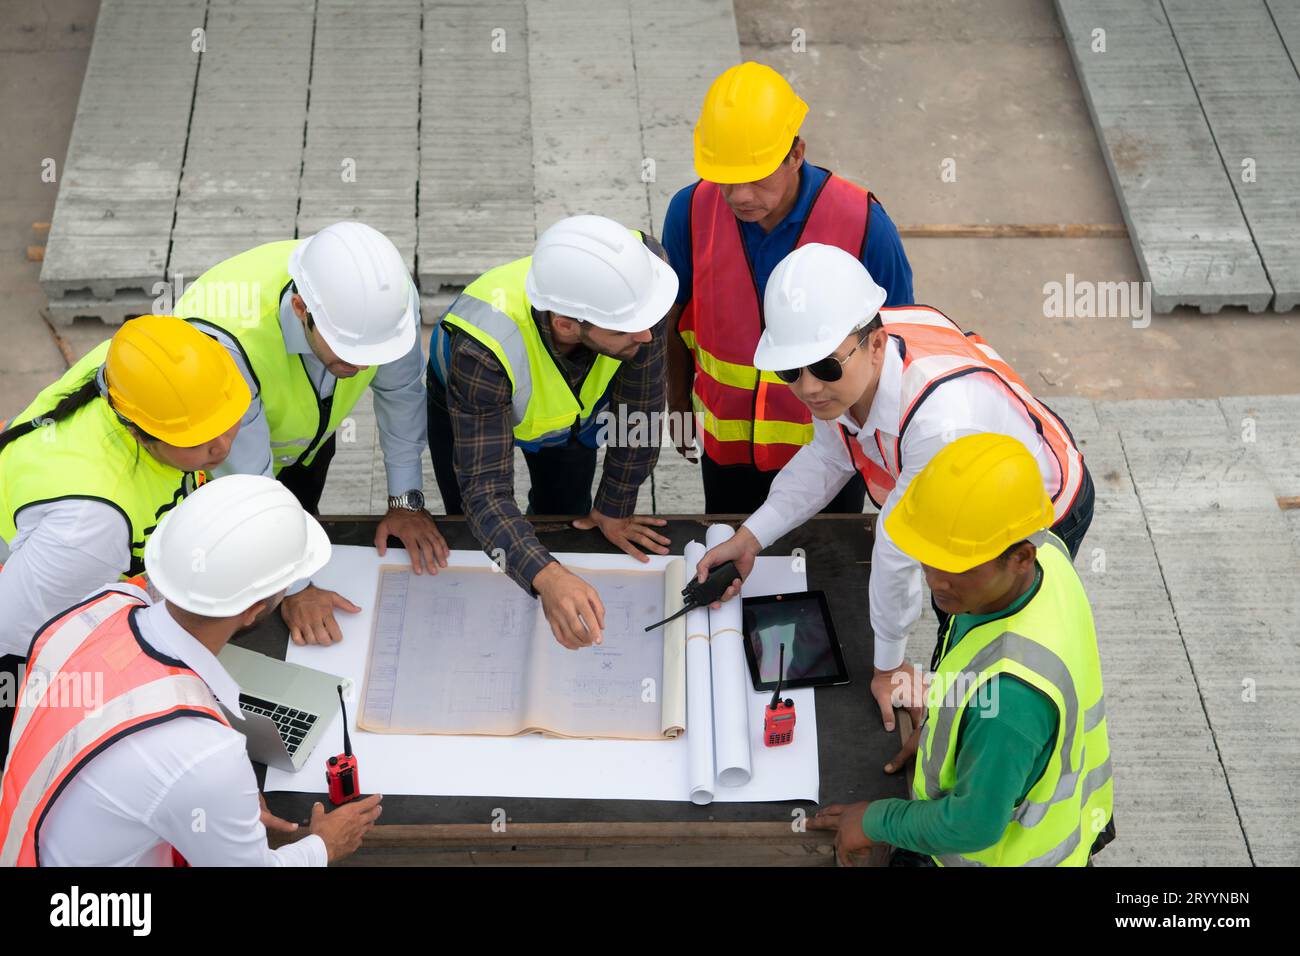 Bauingenieure, Architekten und Vorarbeiter bilden eine Gruppe. Nehmen Sie an einer Besprechung Teil, um neue Bauprojekte zu planen. Stockfoto